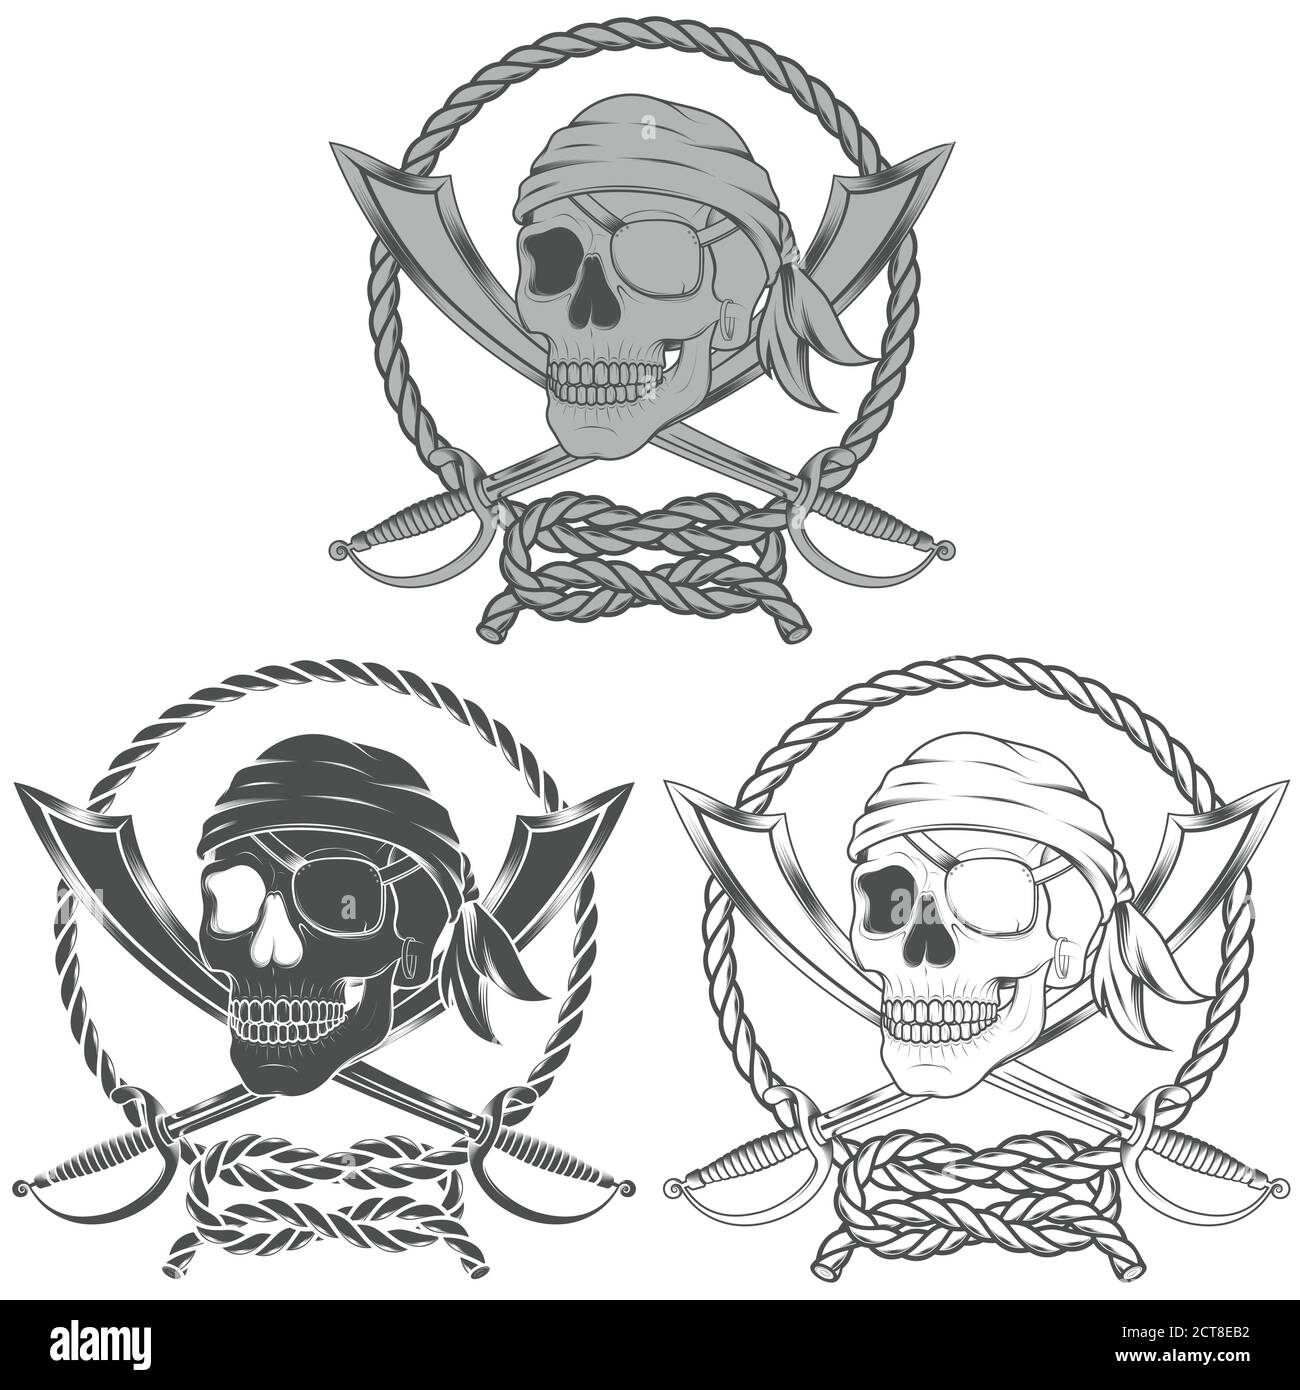 Illustration vectorielle d'un crâne pirate avec deux épées entourées d'une corde entrelacée, en niveaux de gris Illustration de Vecteur